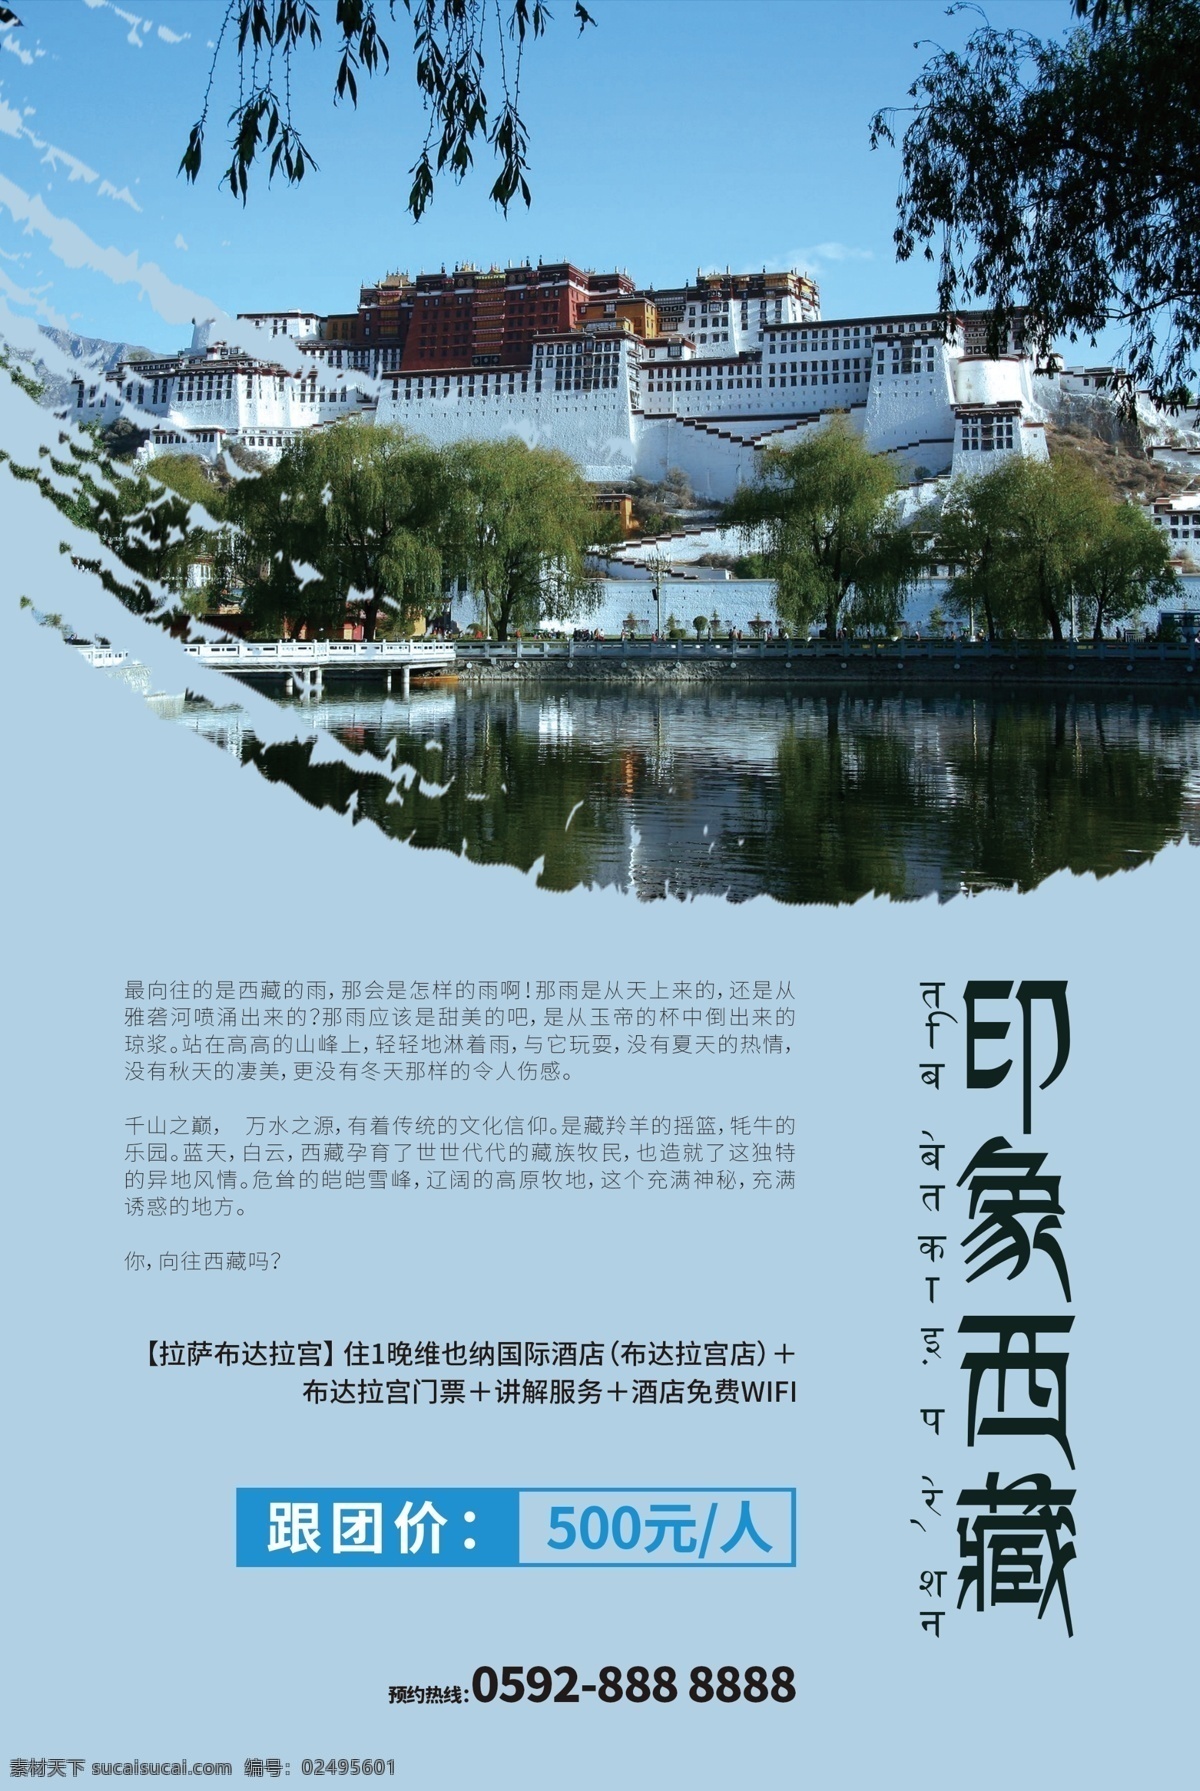 印象 西藏 西藏旅游 旅游海报 西藏旅游海报 印象西藏 西藏之旅 简约海报 简约传单 西藏旅游传单